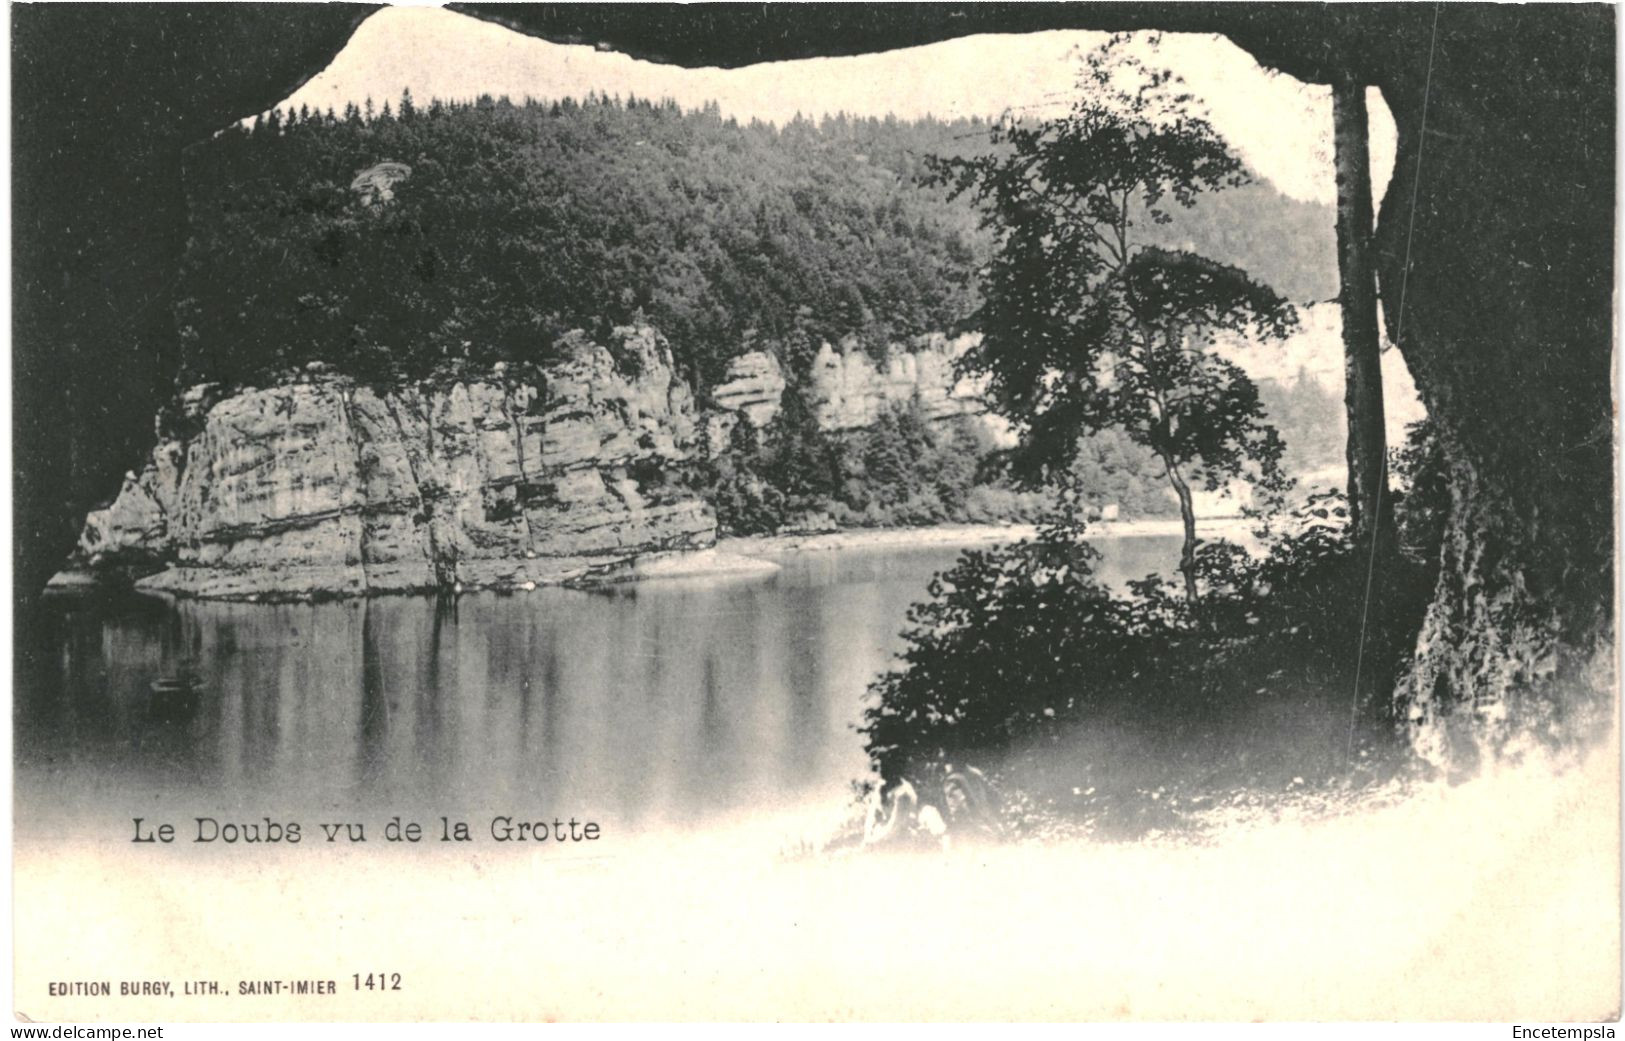 CPA Carte Postale Suisse Le Doubs Vu De La Grotte 1904 VM79021 - Saint-Imier 